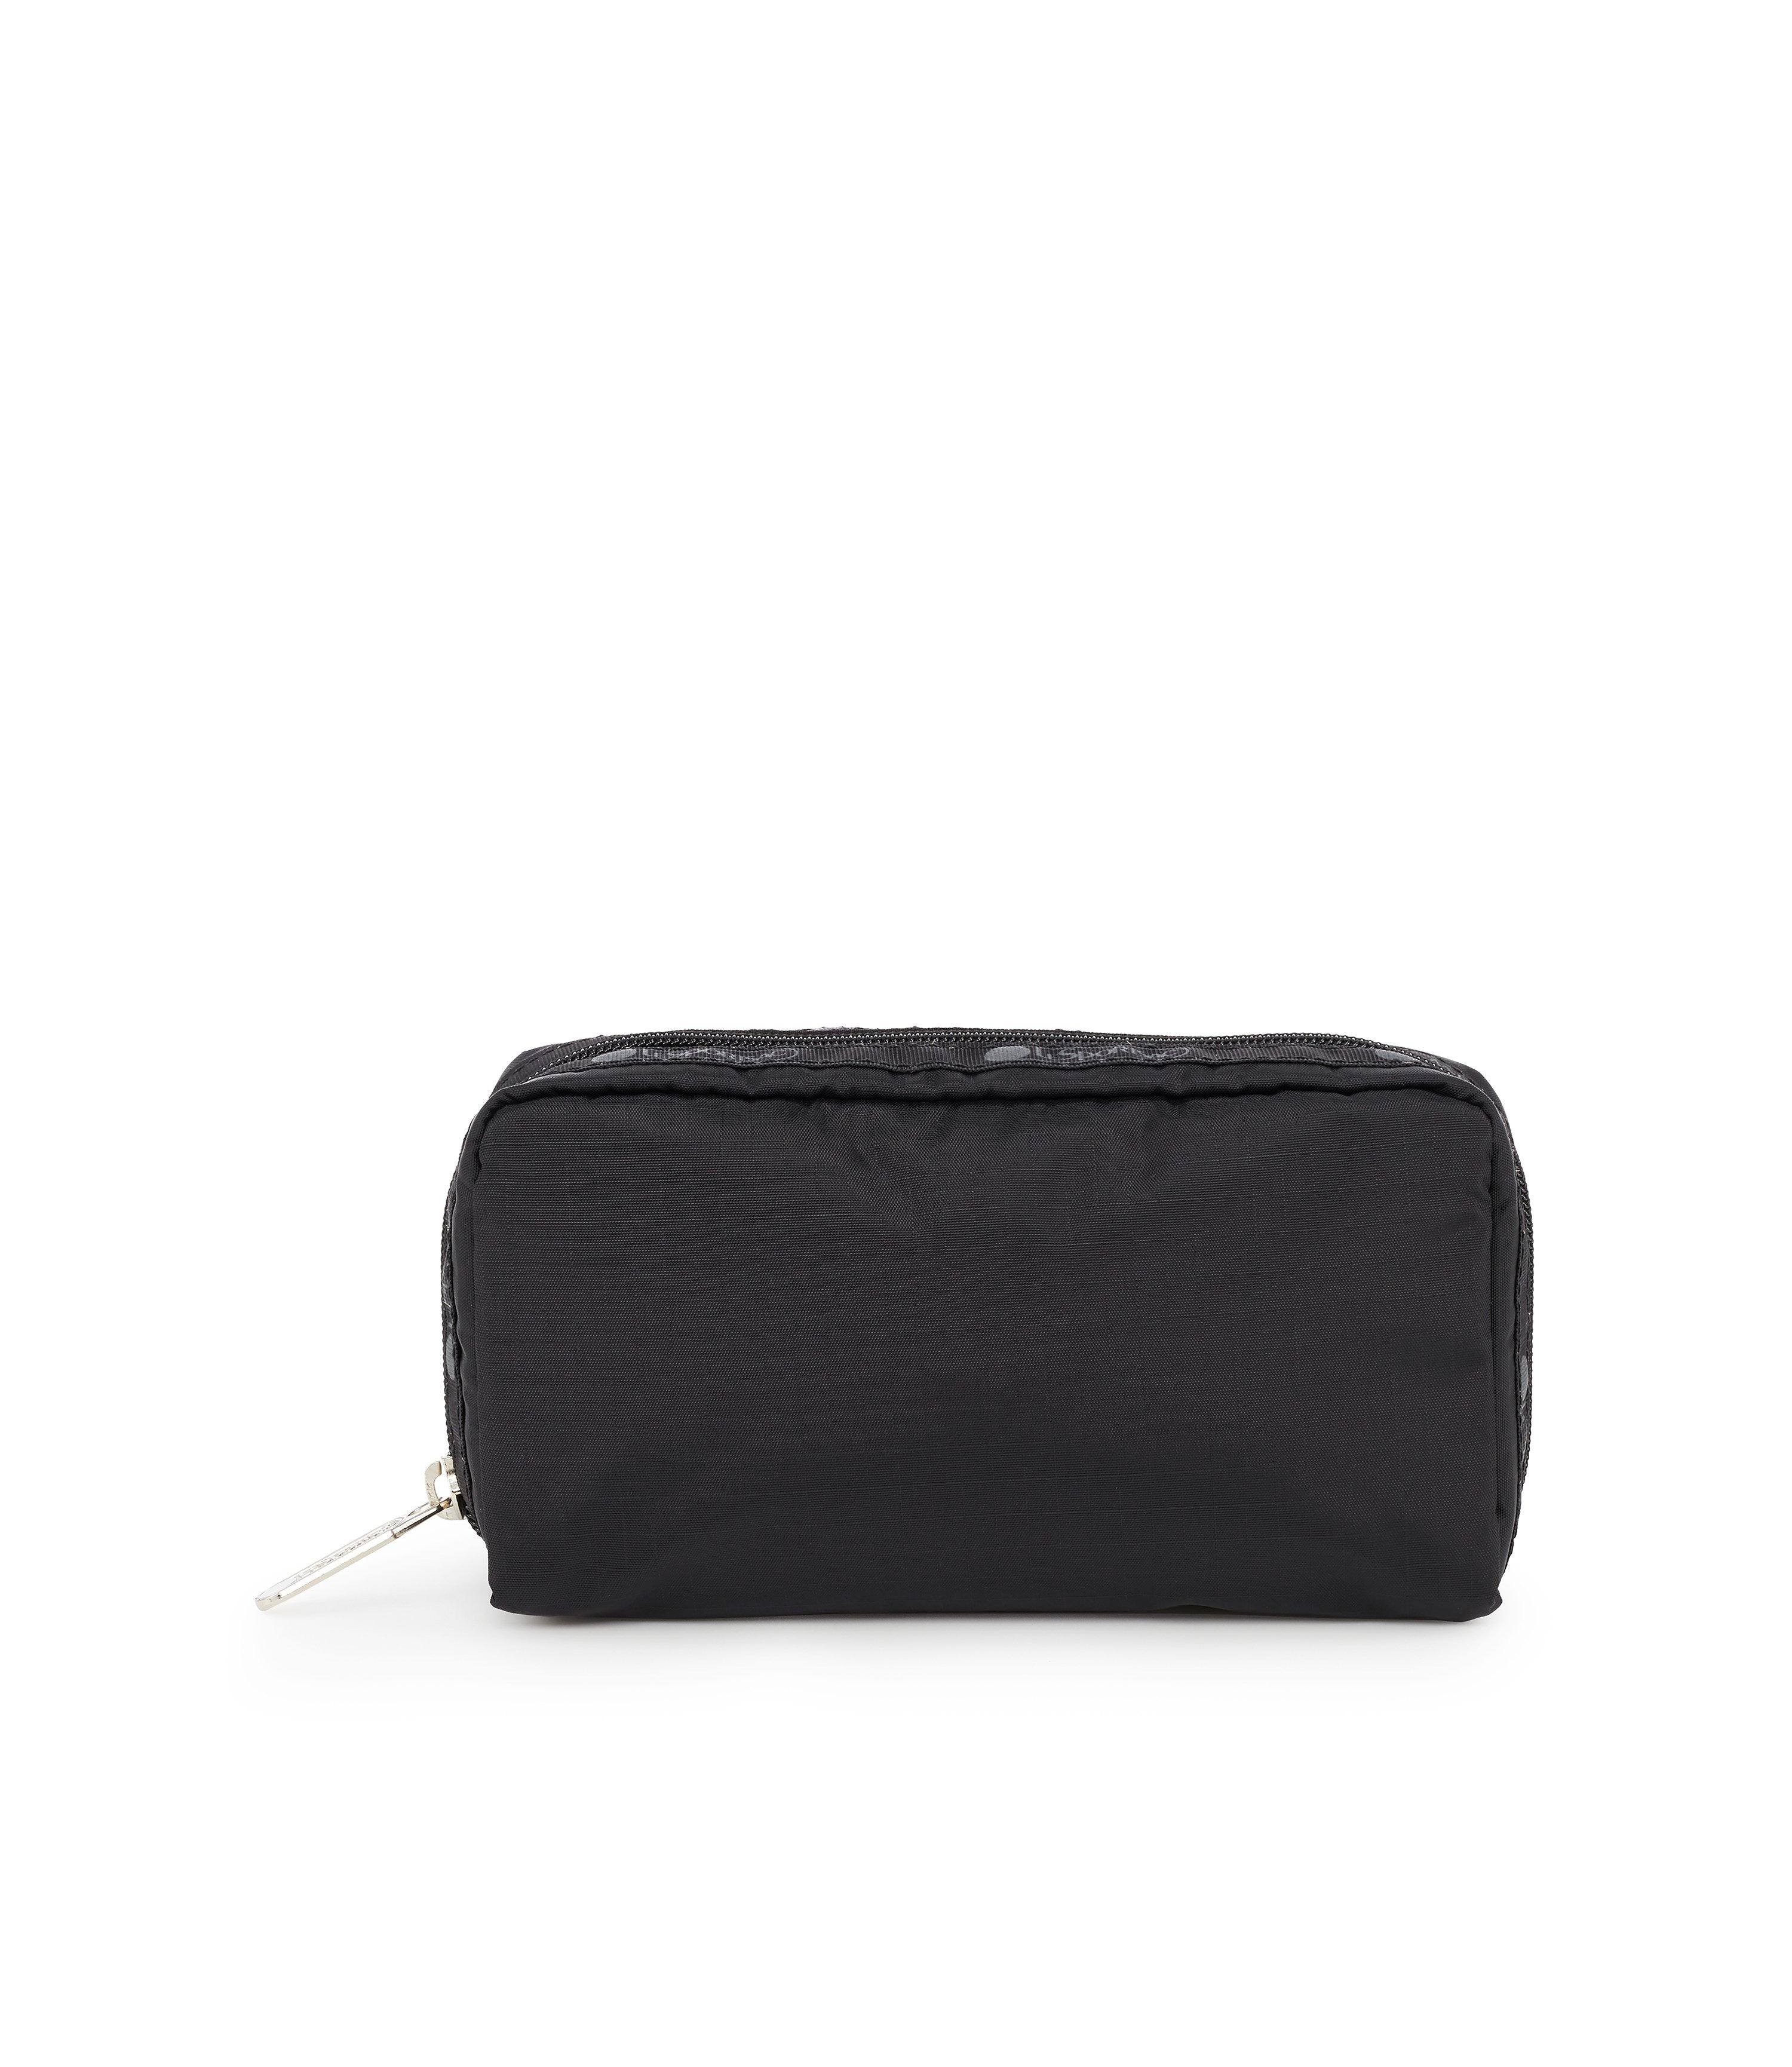 Simply Vera Wang Purse Black Vegan Leather Crossbody Bag NEW Elegant Cute |  Vera wang purses, Leather crossbody bag, Simply vera wang